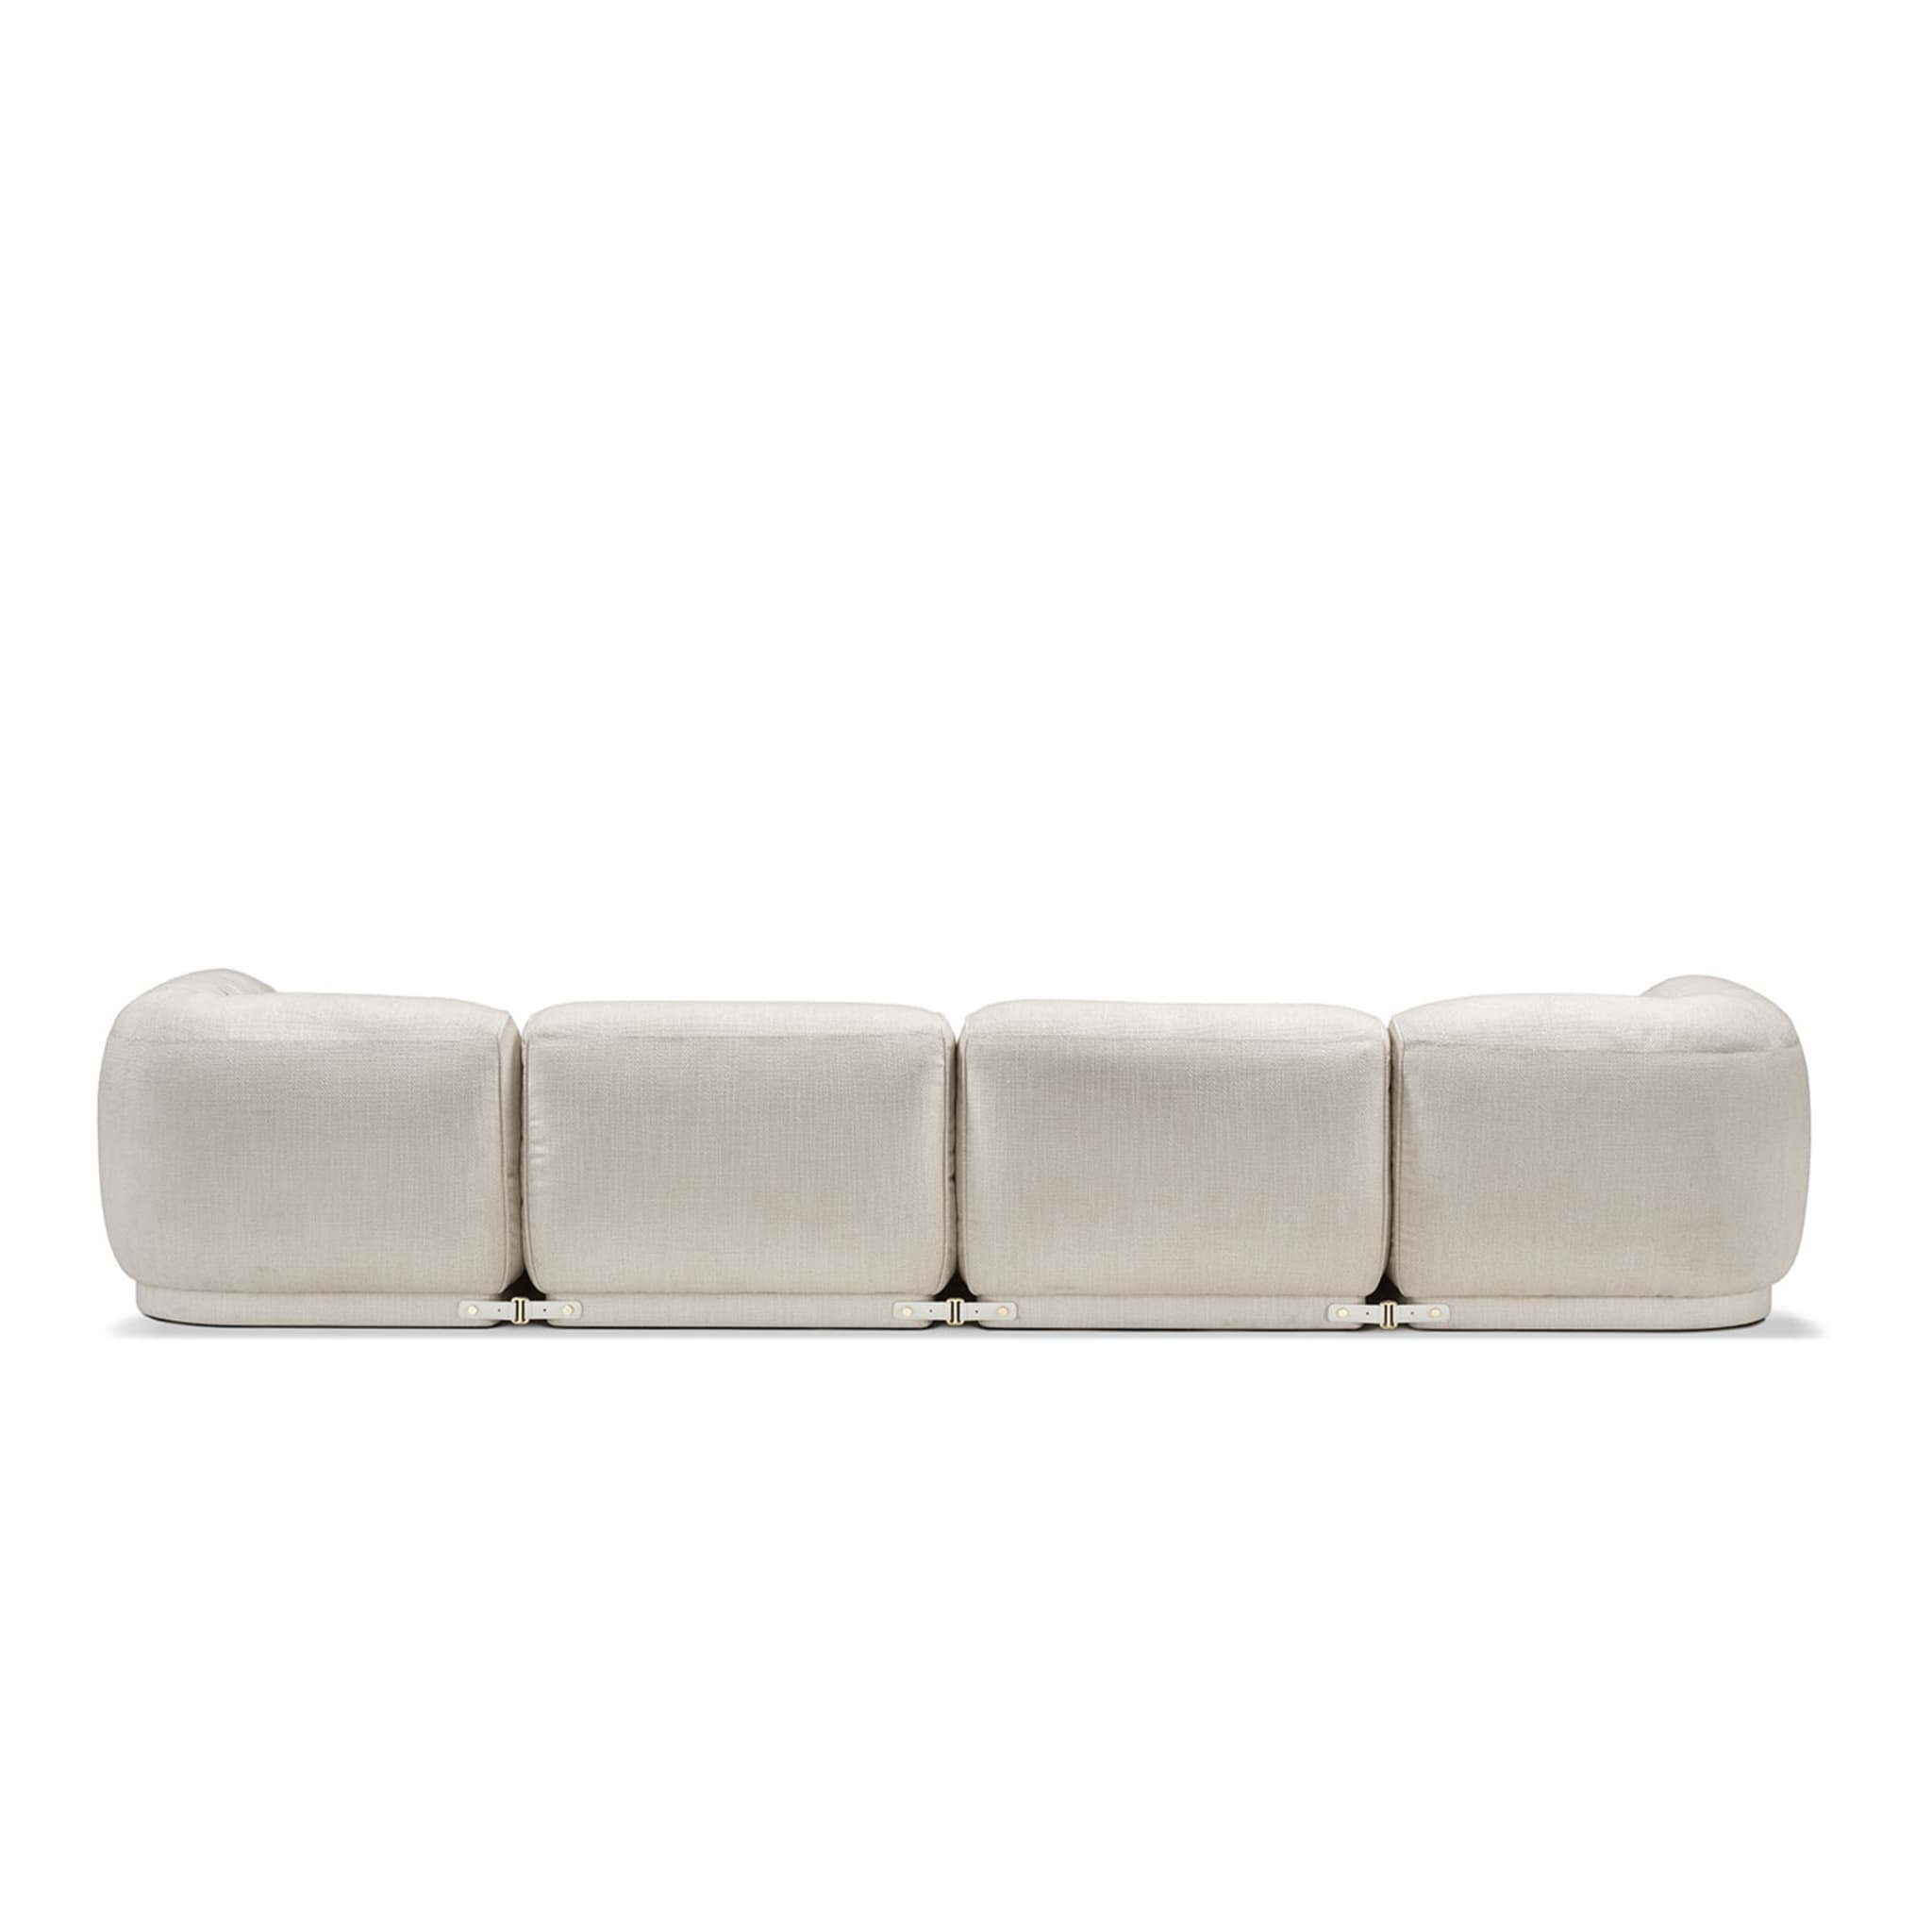 Leisure 4-Seater White Sofa by Lorenza Bozzoli - Alternative view 2